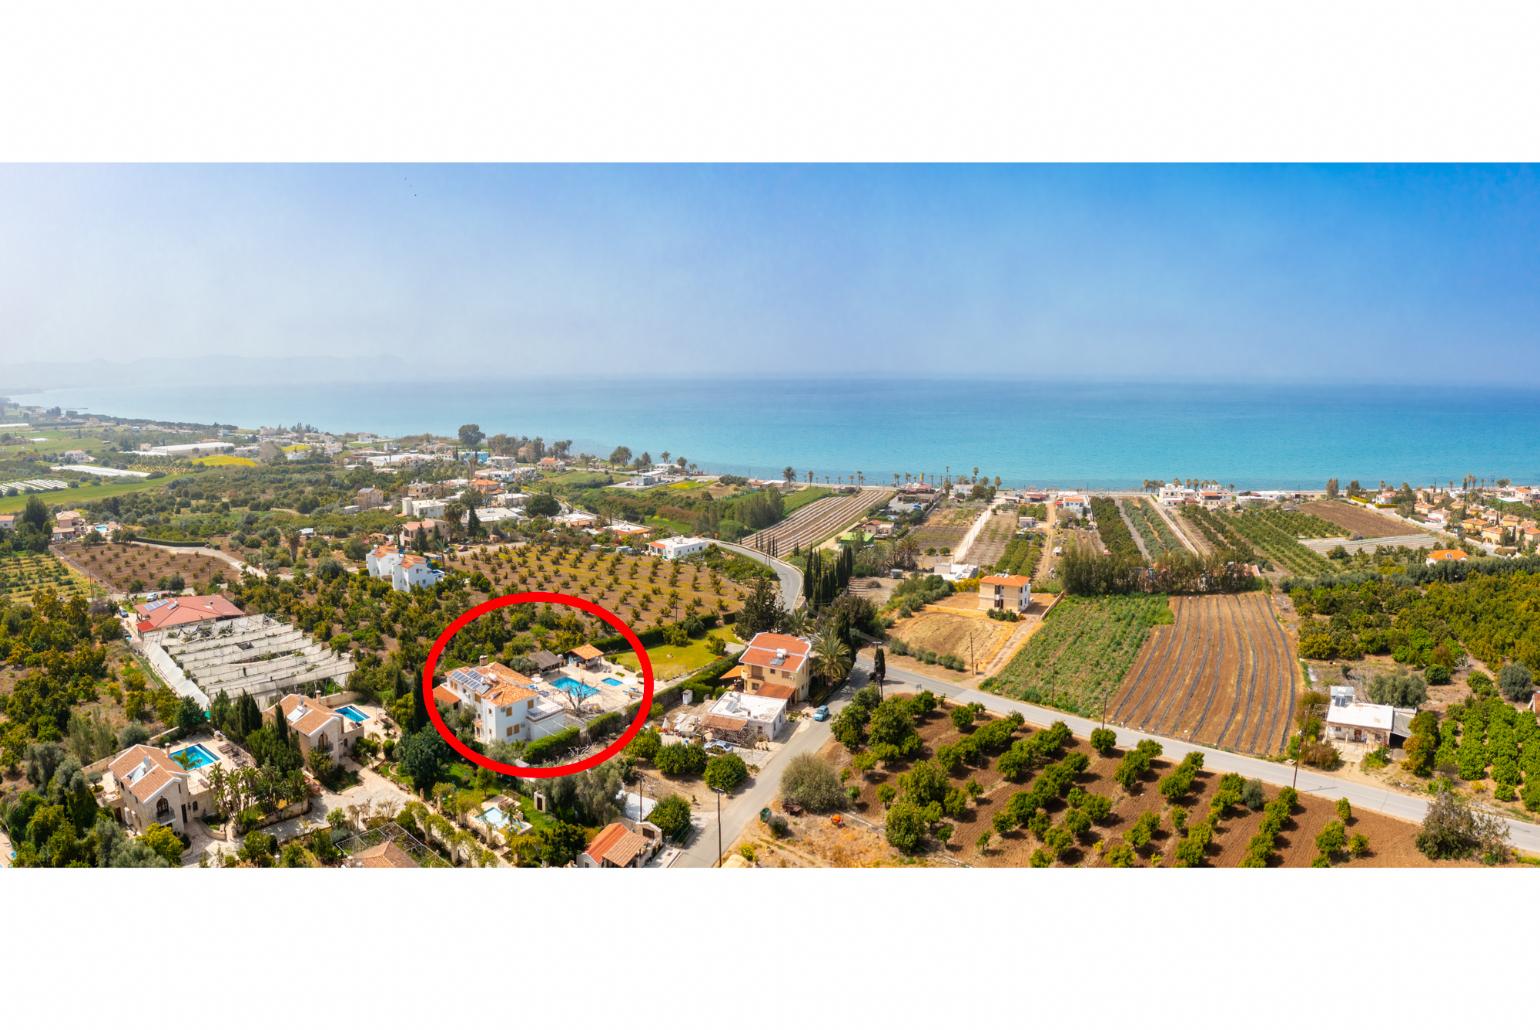 Aerial view showing location of Villa Xenios Dias